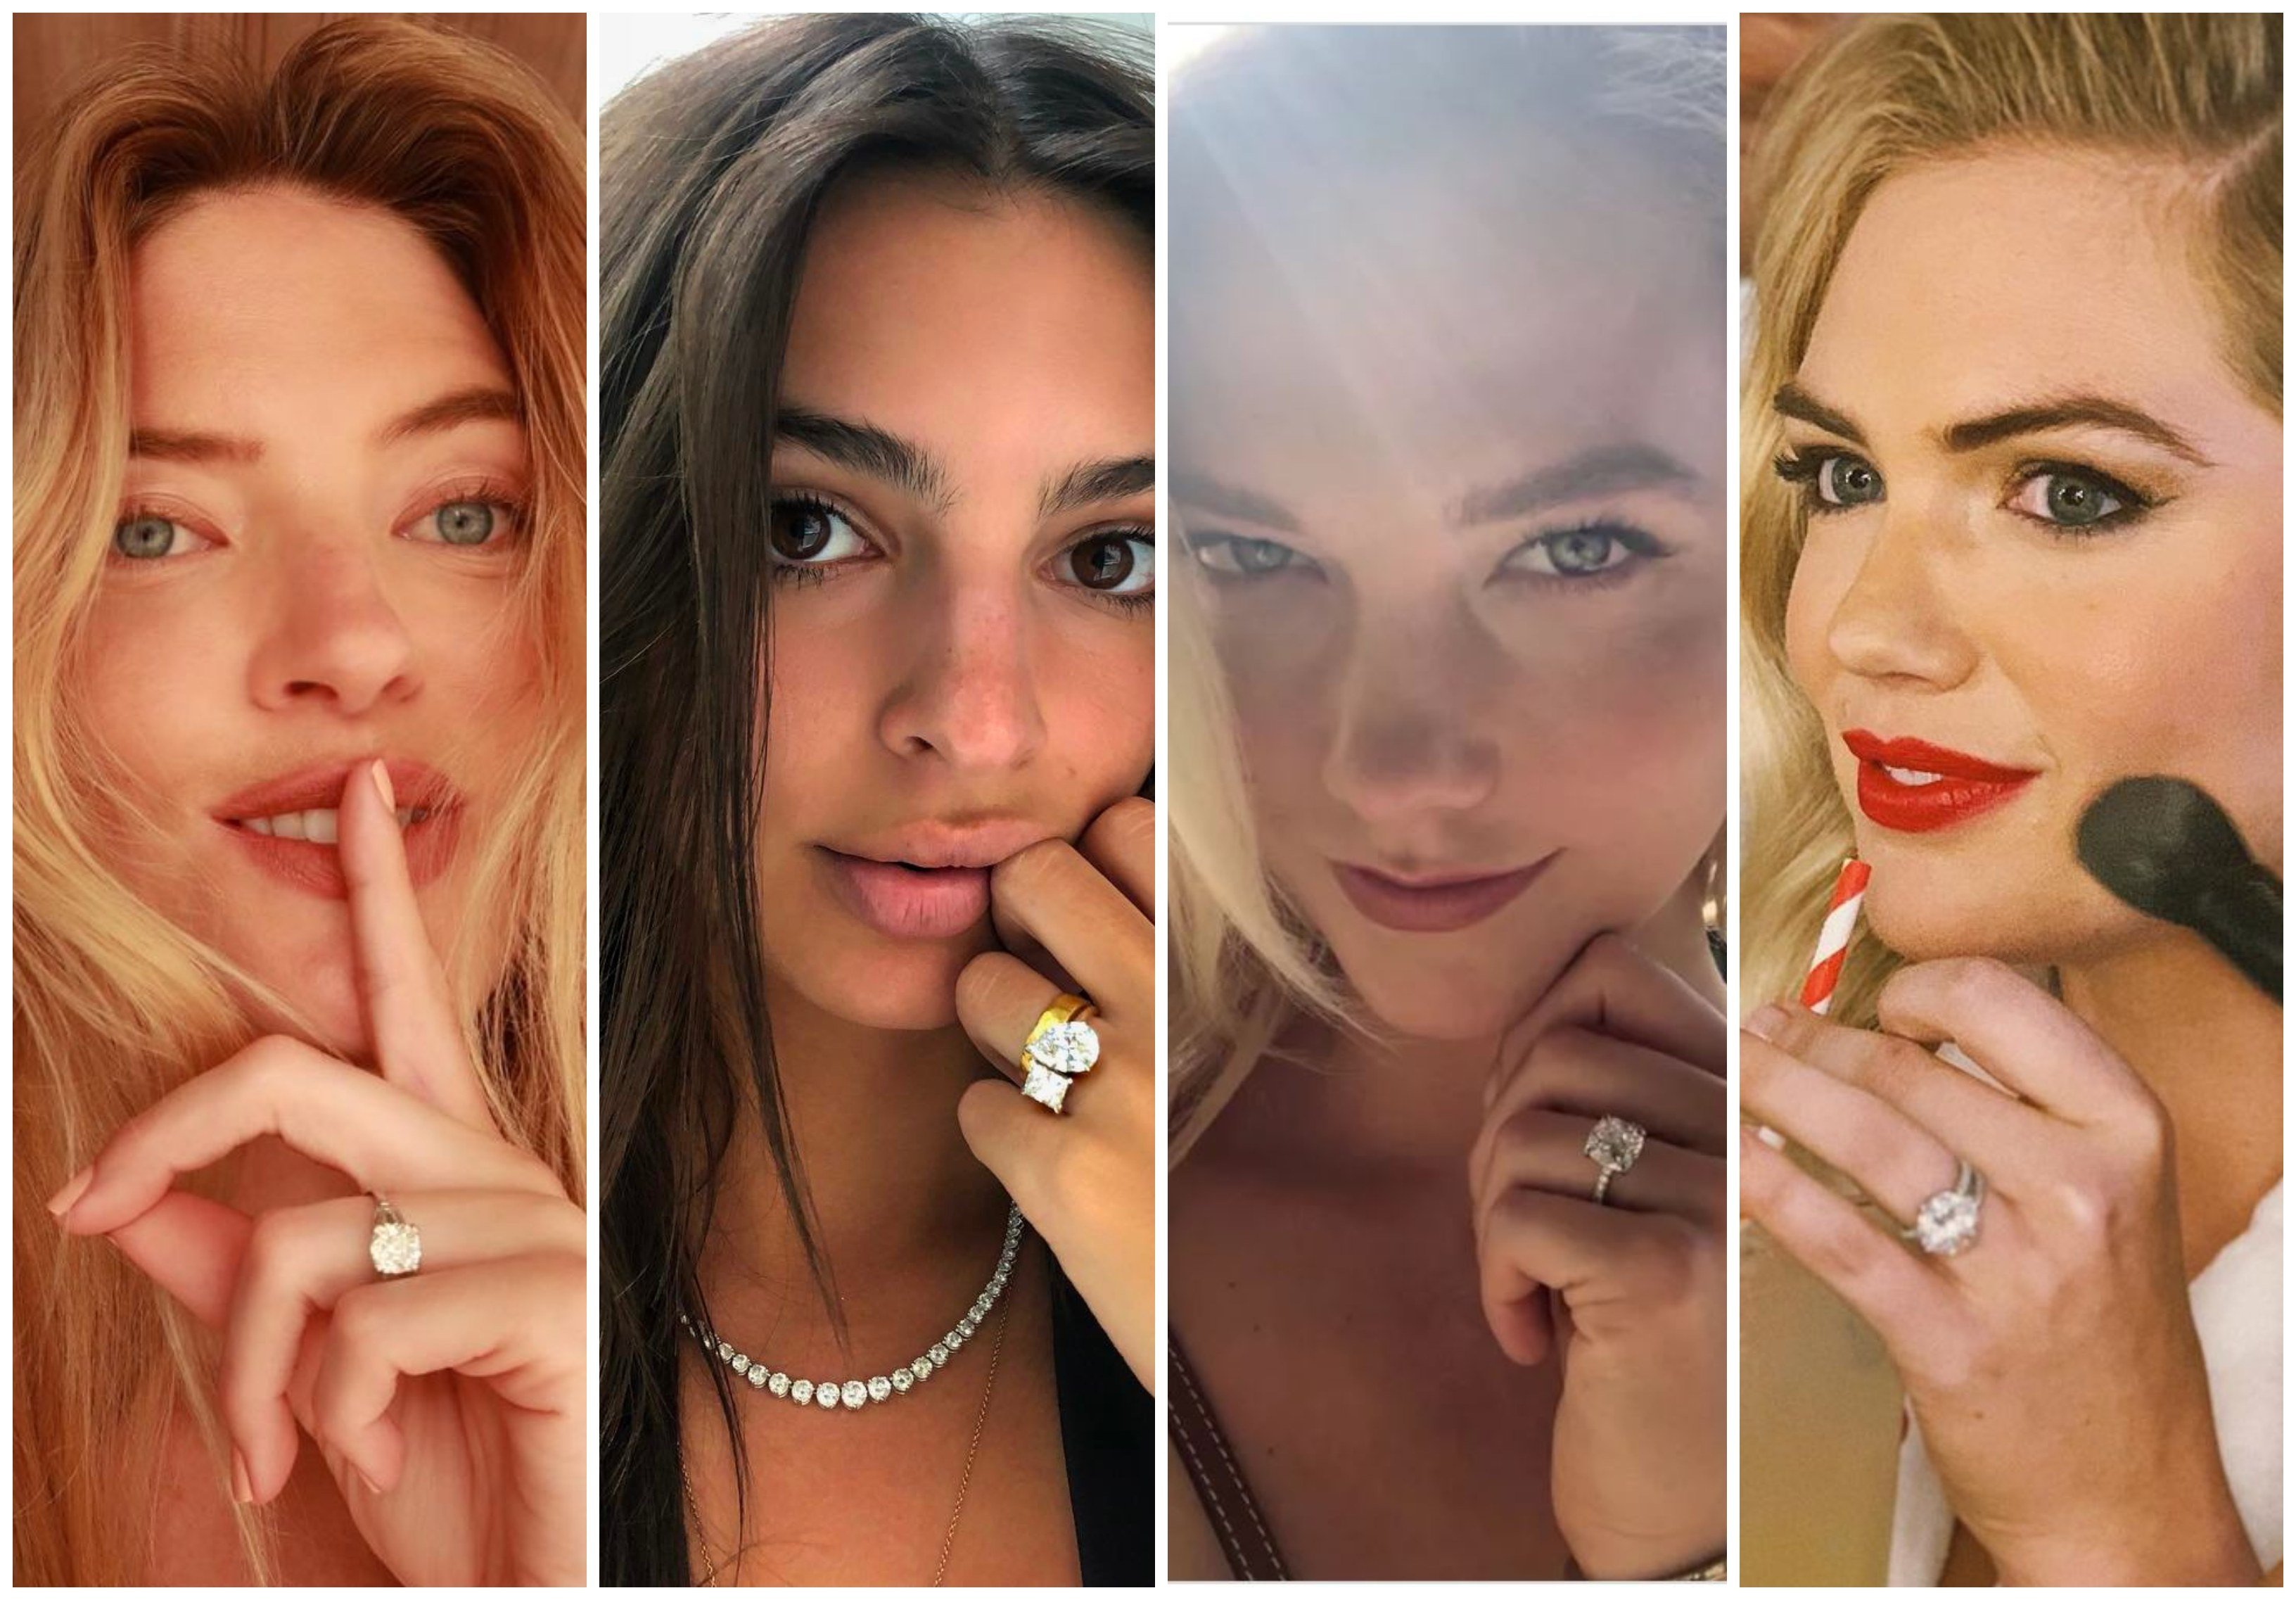 Angel Martha Hunt, Emily Ratajkowski, Karlie Kloss and Kate Upton all share their engagement ring bling on the ‘gram. Photos: @marthahunt, @emrata, @kateupton/Instagram; Karlie Kloss/Twitter